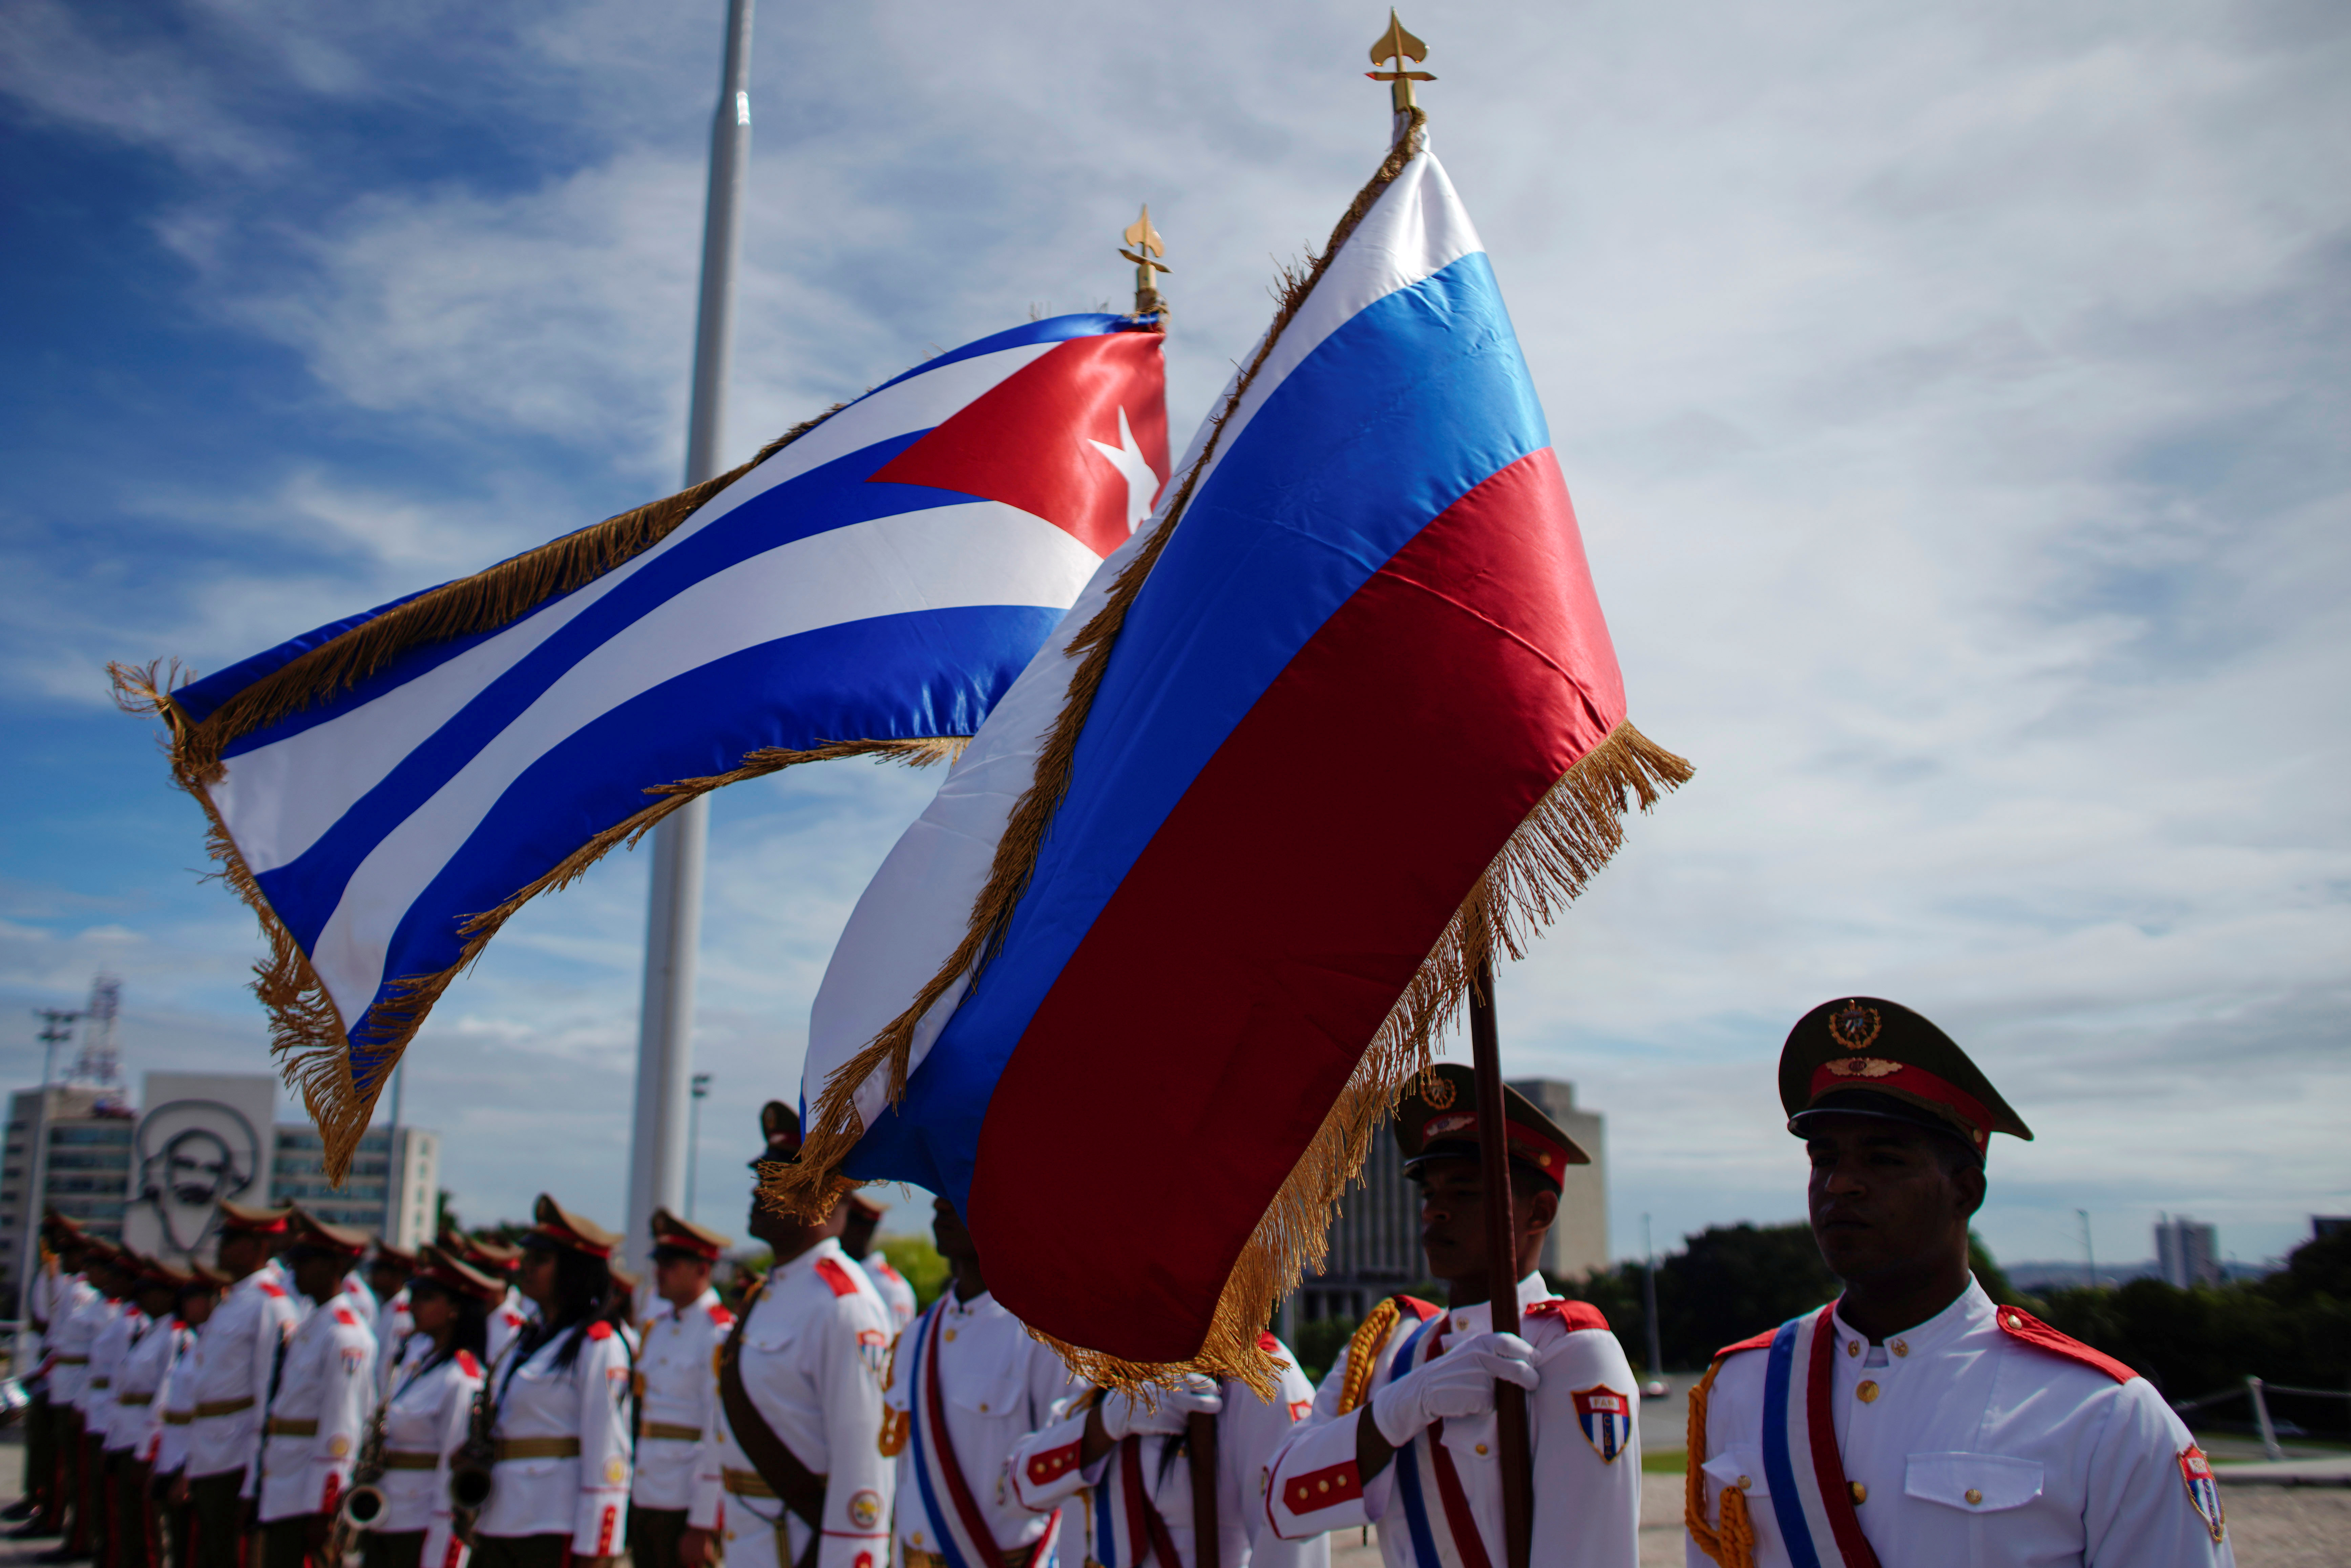 El primer ministro de Rusia llegó a Cuba este jueves para reforzar las relaciones bilaterales.